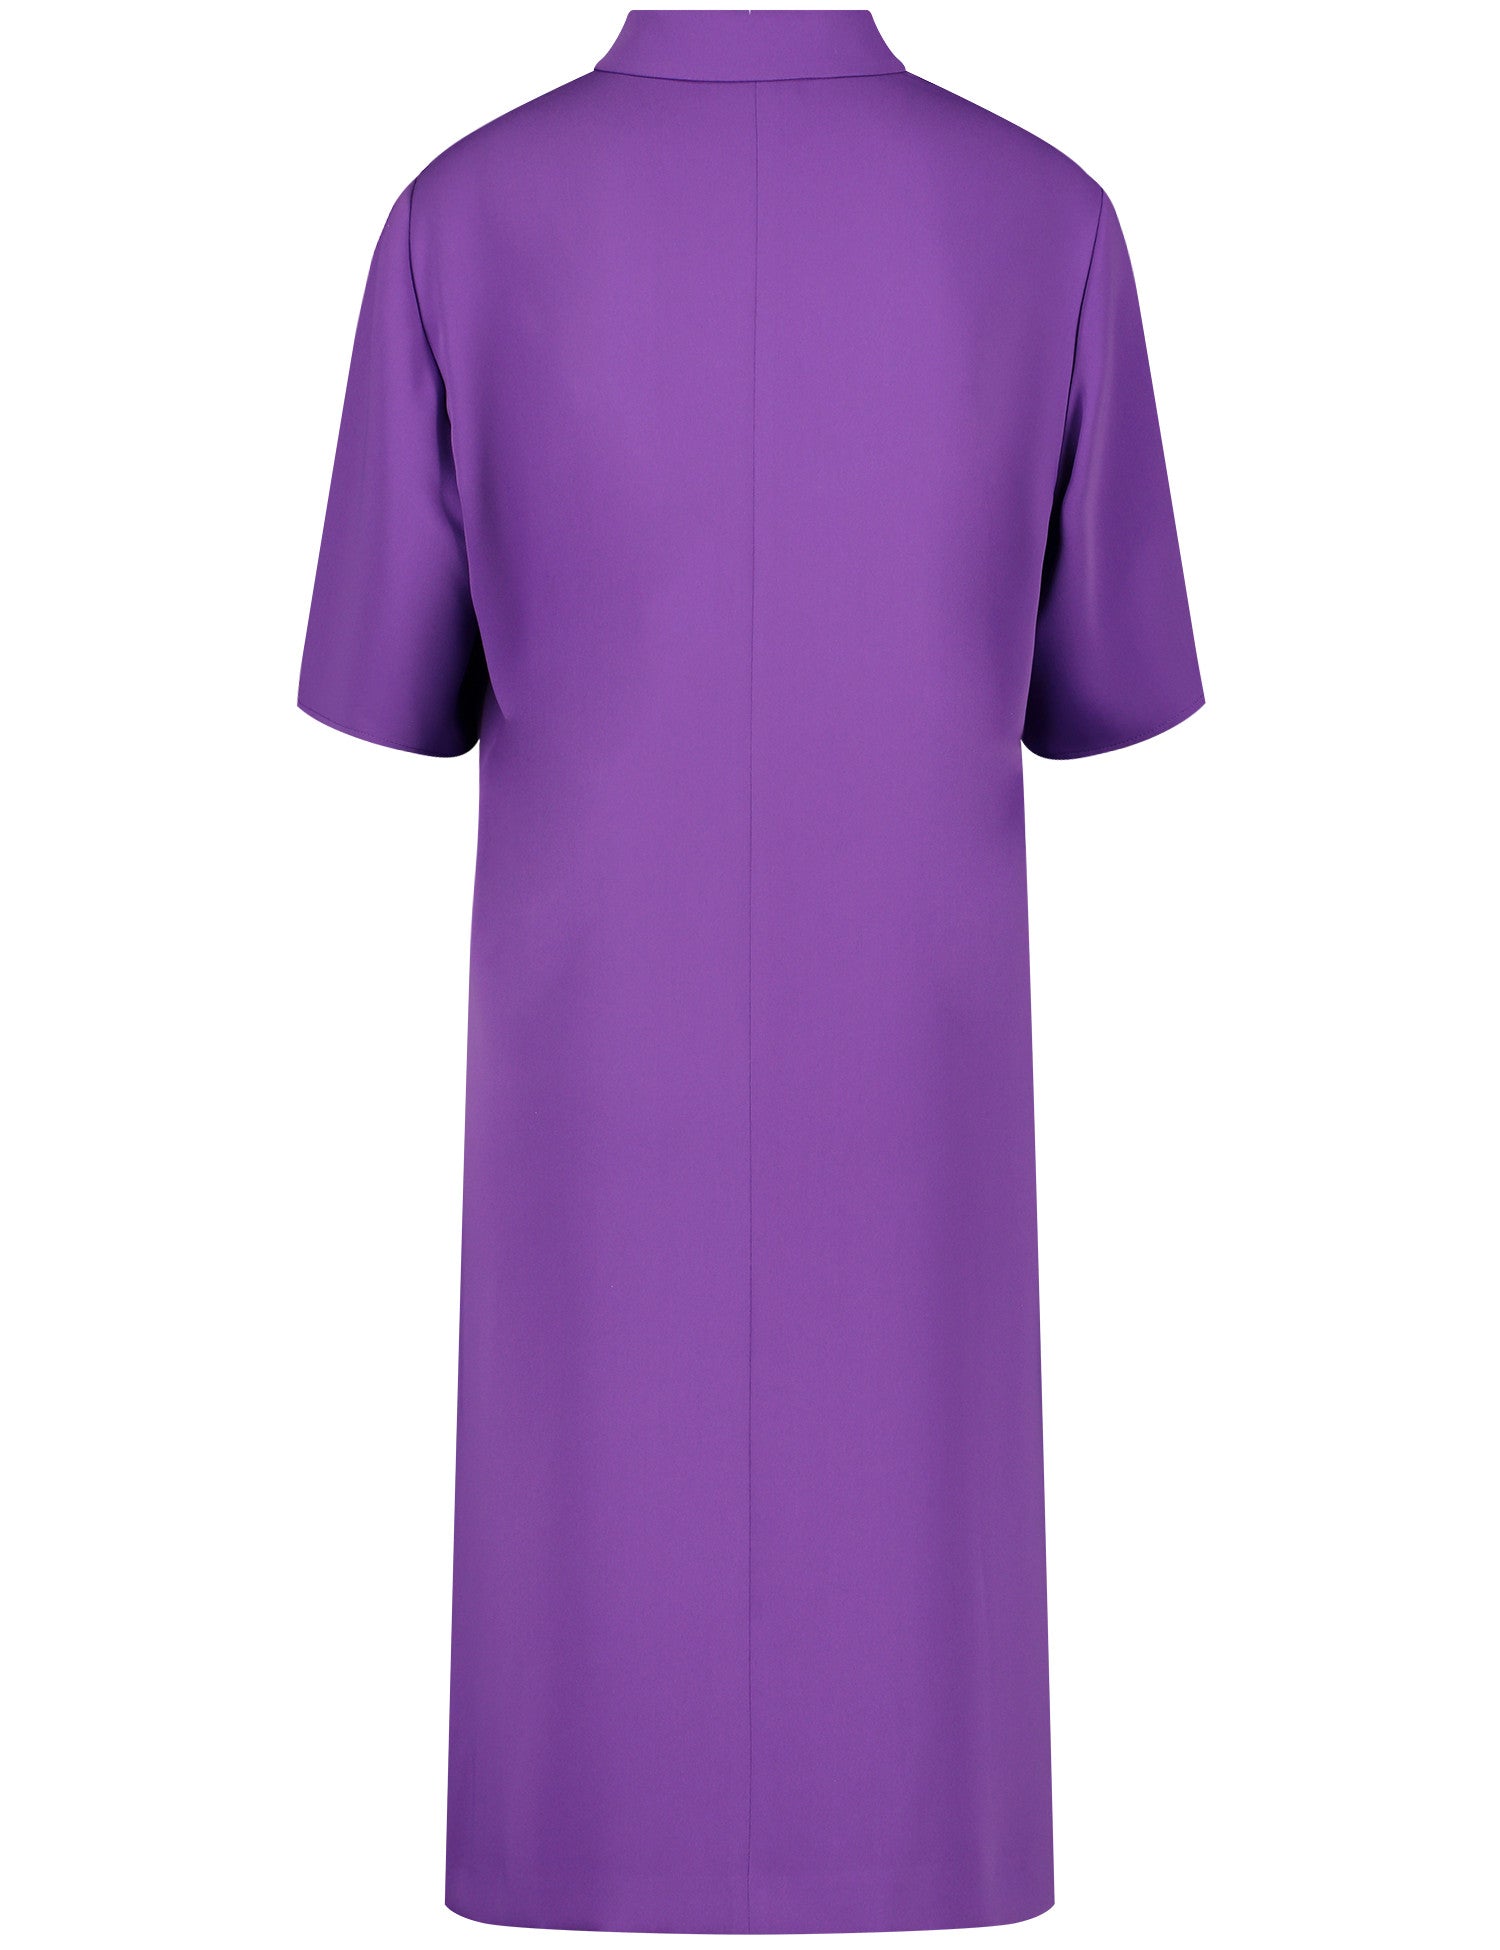 Gerry Weber - Purple Zip Dress